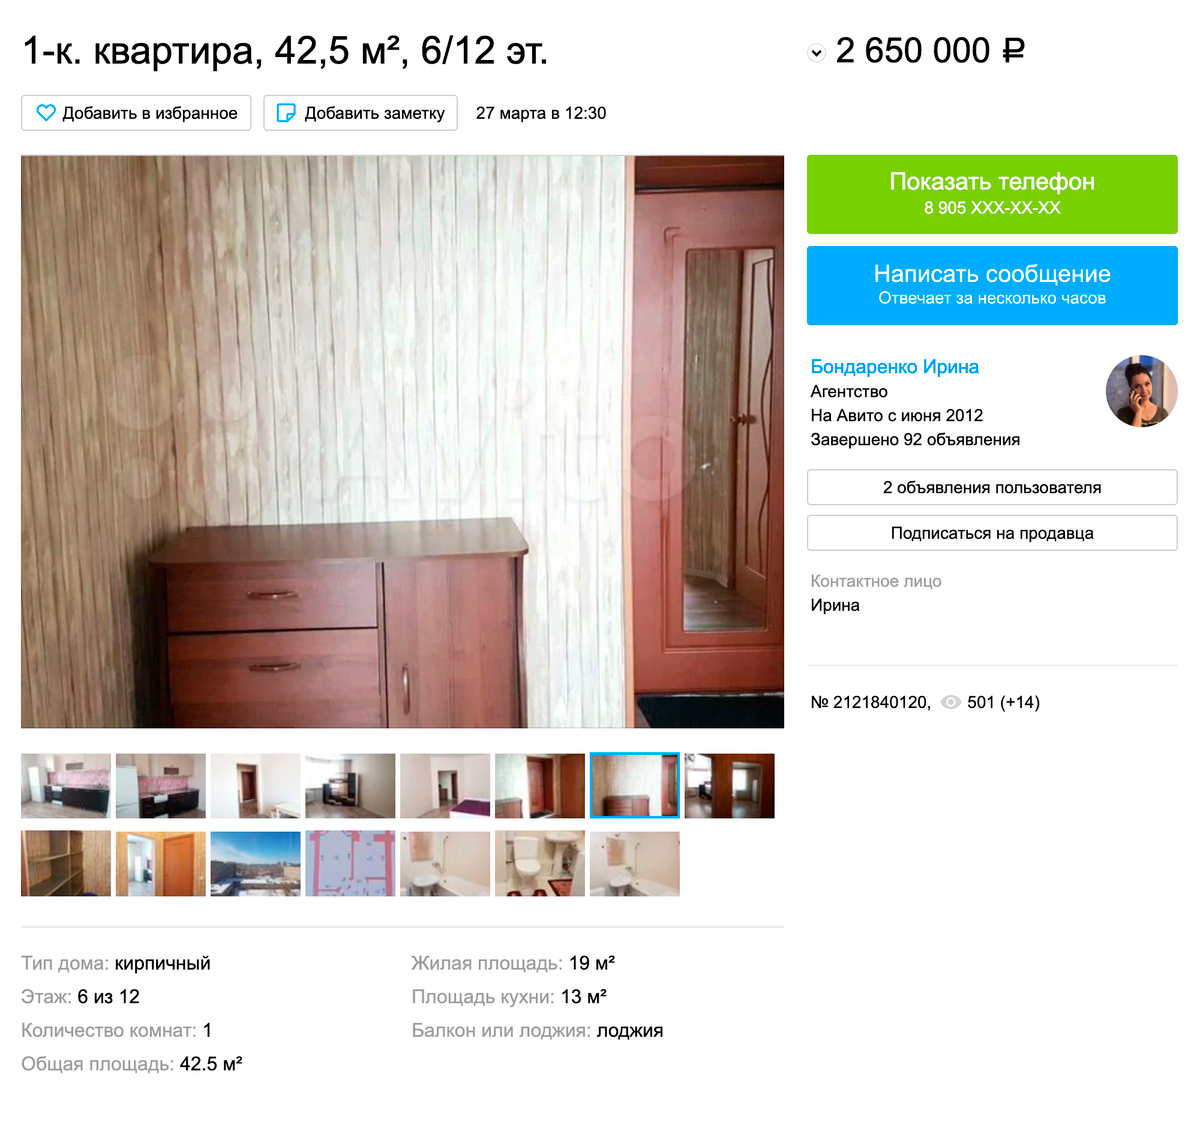 Однушка в кирпичном доме в Ленинском районе — 2,65&nbsp;млн рублей